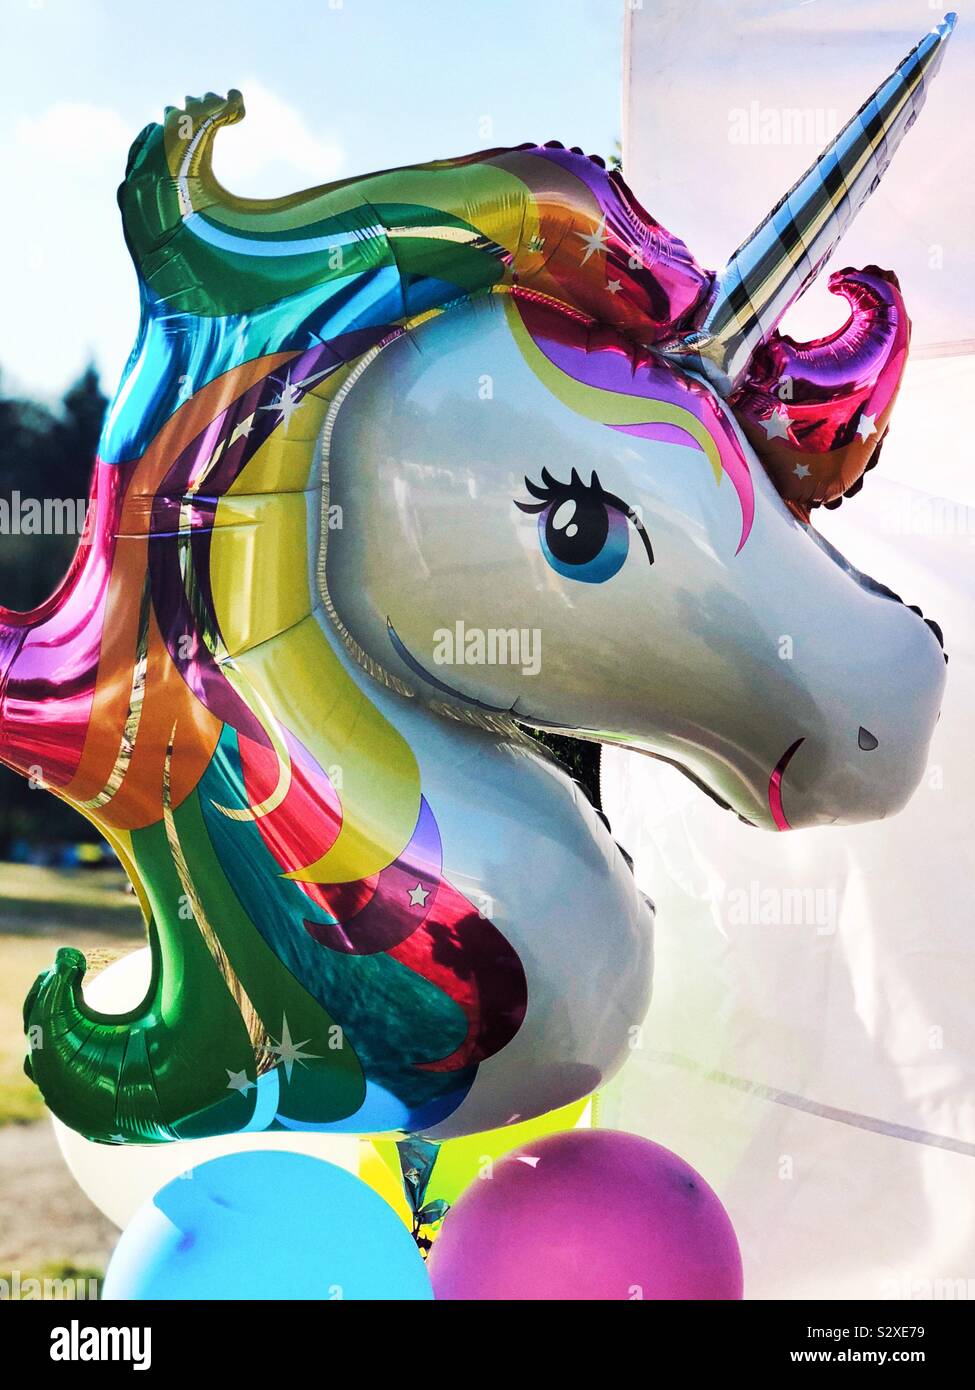 unicorn helium balloon Stock Photo